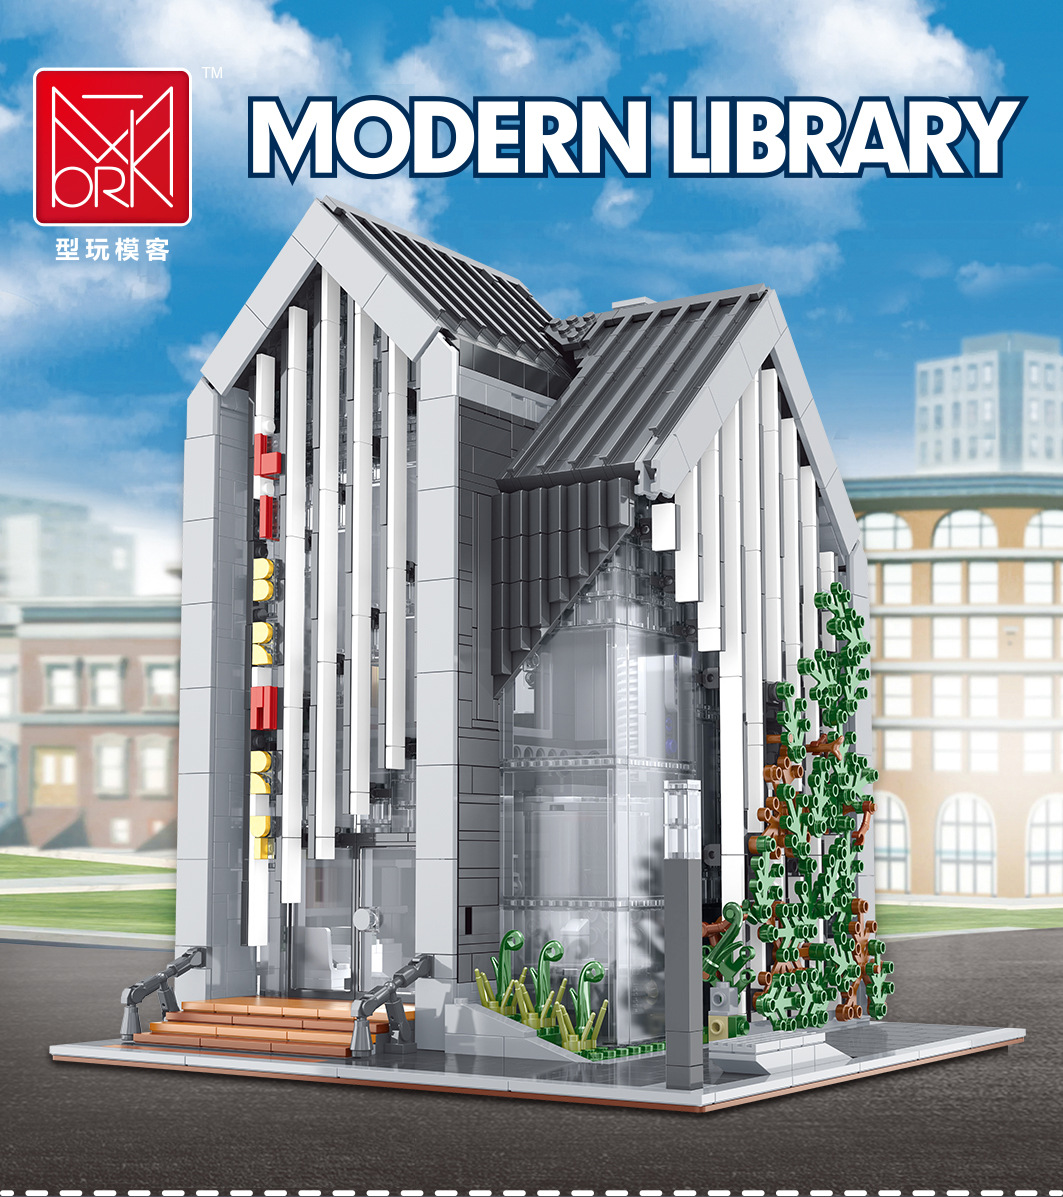 MORK 011001 Conjunto de juguetes de ladrillos de construcción modelo de biblioteca moderna